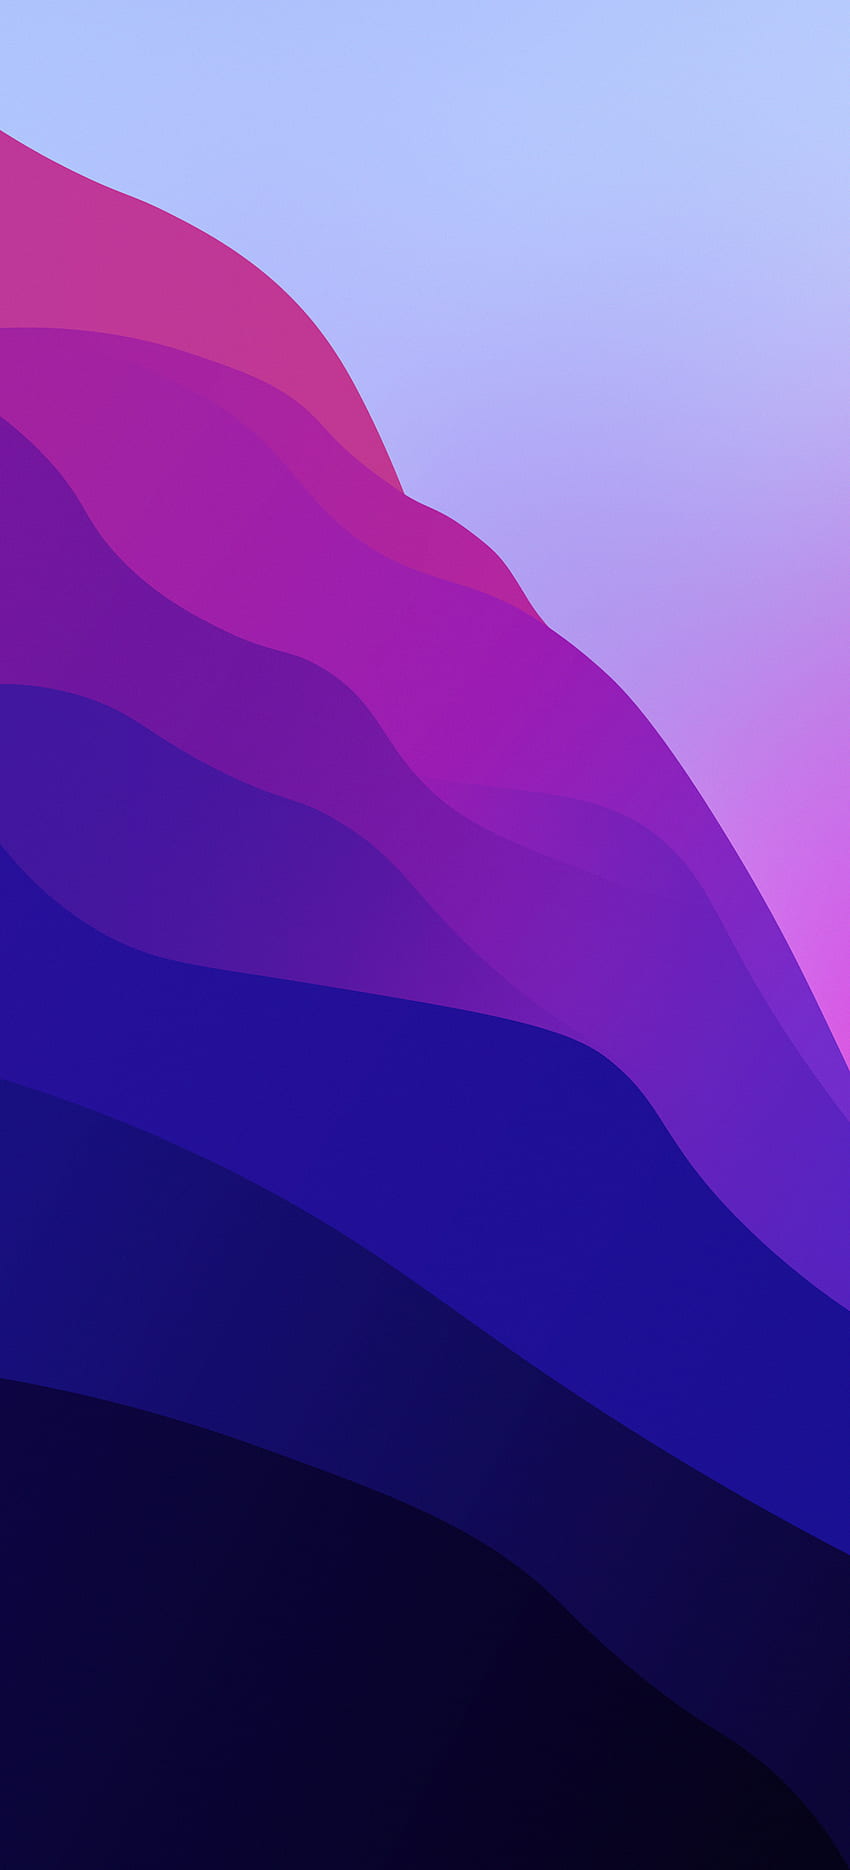 macOS Monterey menginspirasi “Waves” untuk iPhone wallpaper ponsel HD